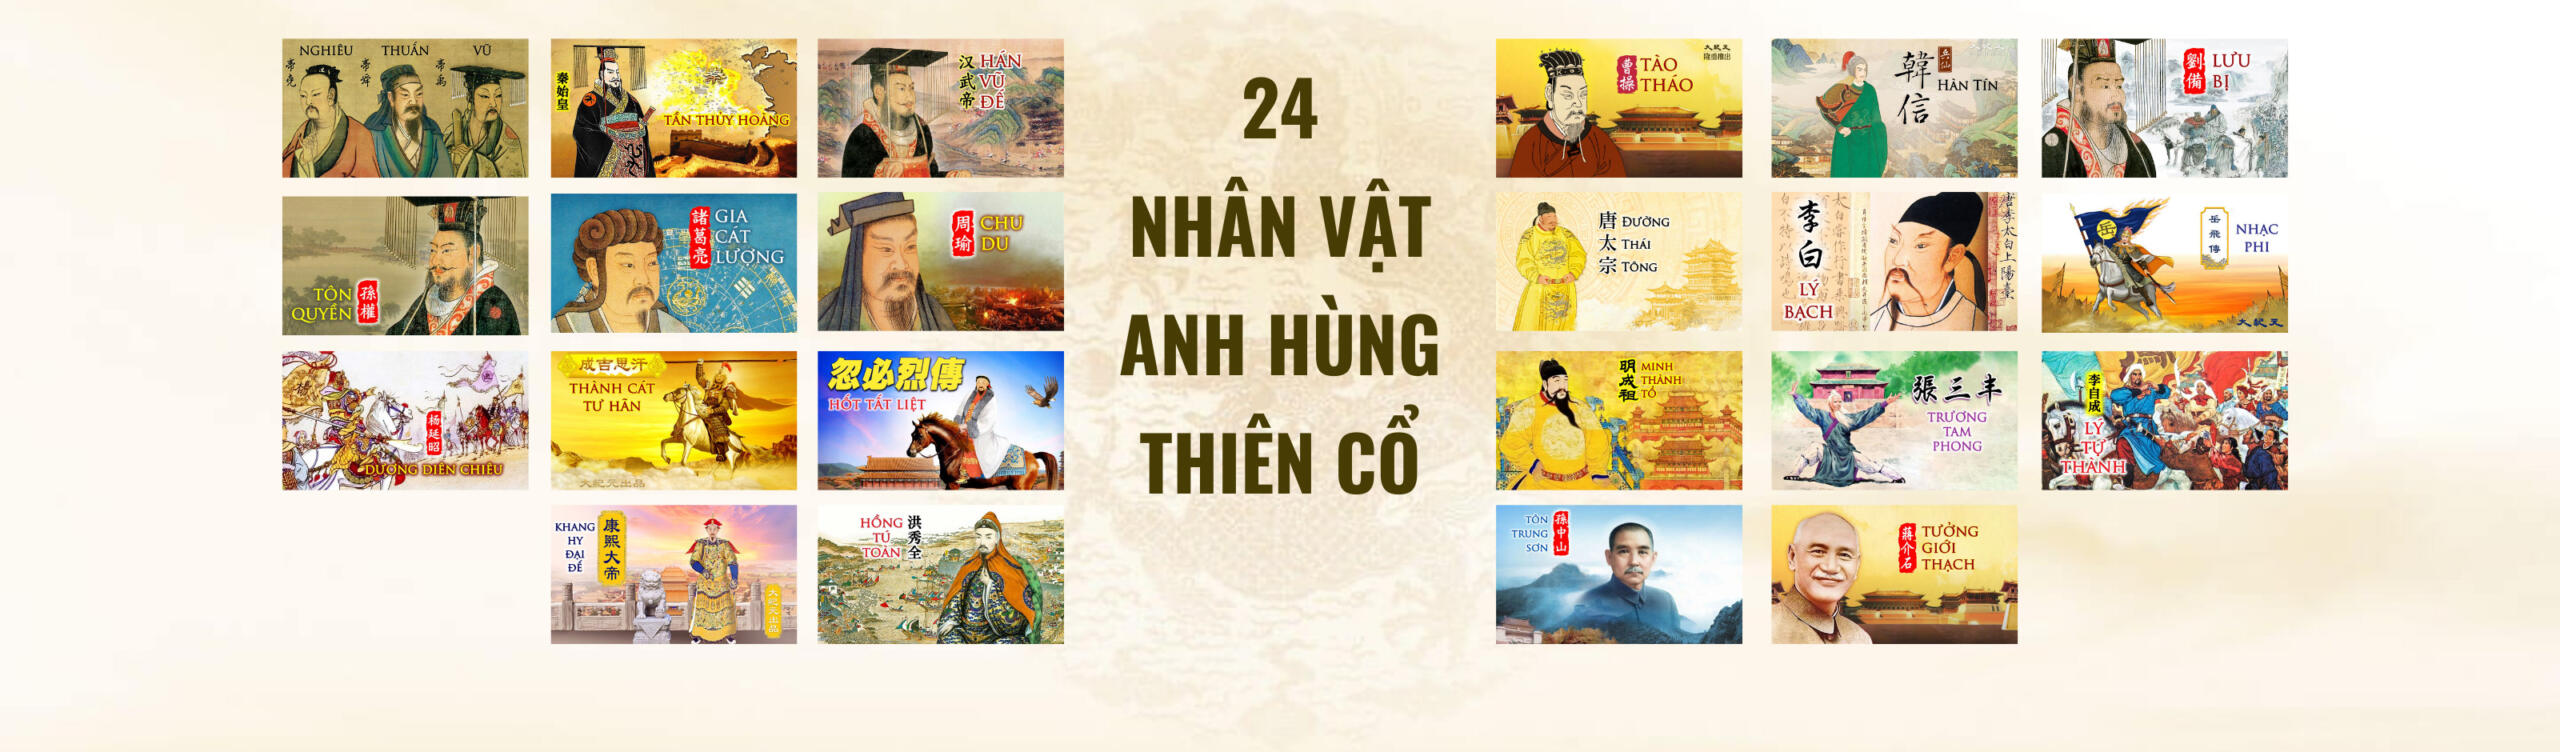 Slide 24 nhân vật Anh hùng Thiên cổ